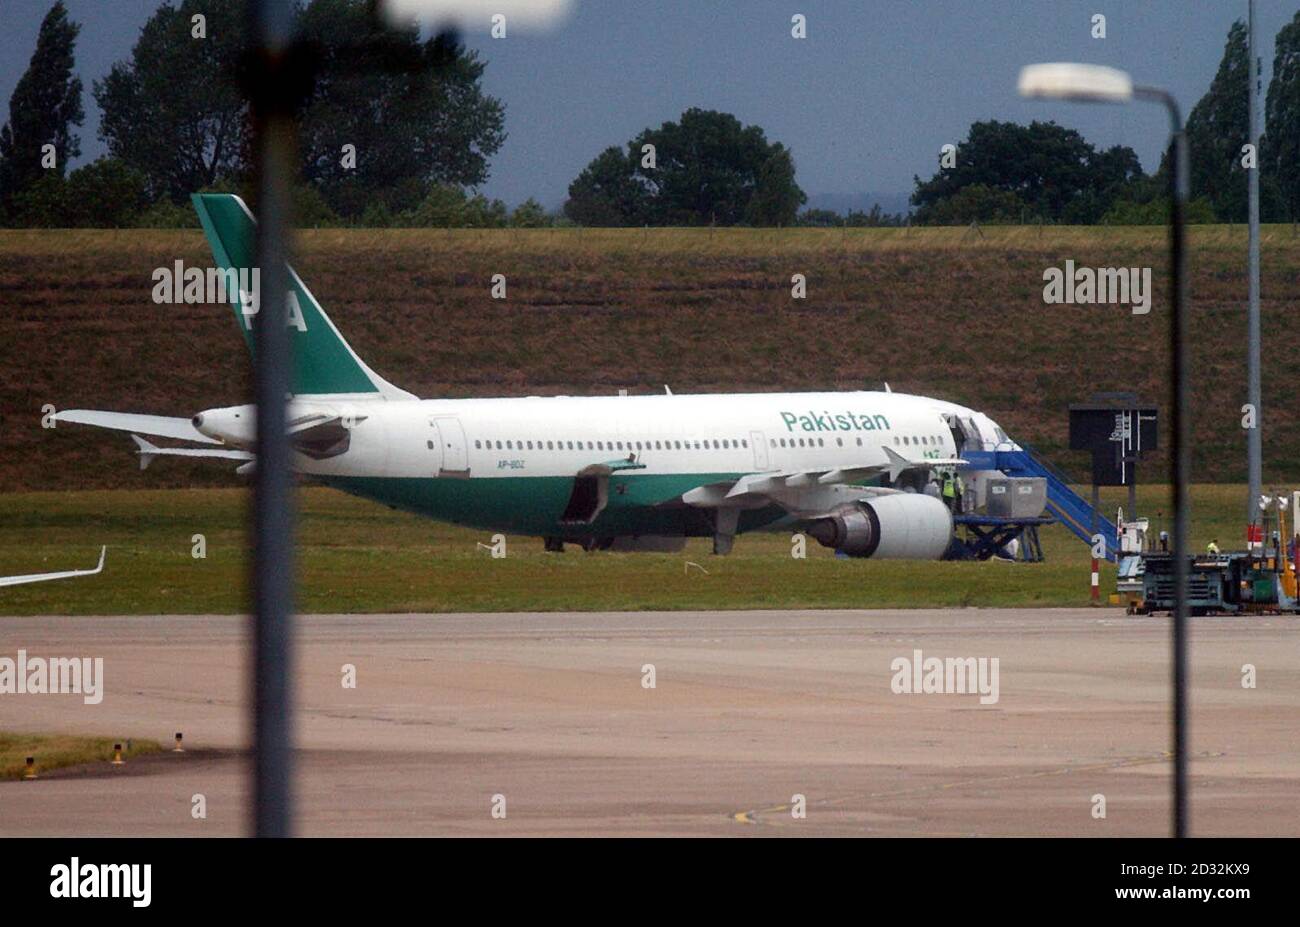 L'Airbus A310 de Pakistan International Airlines est situé sur le tarmac de l'aéroport international de Birmingham, d'où un homme a été détenu lors des contrôles de sécurité des passagers voyageant du Pakistan au Canada. Banque D'Images